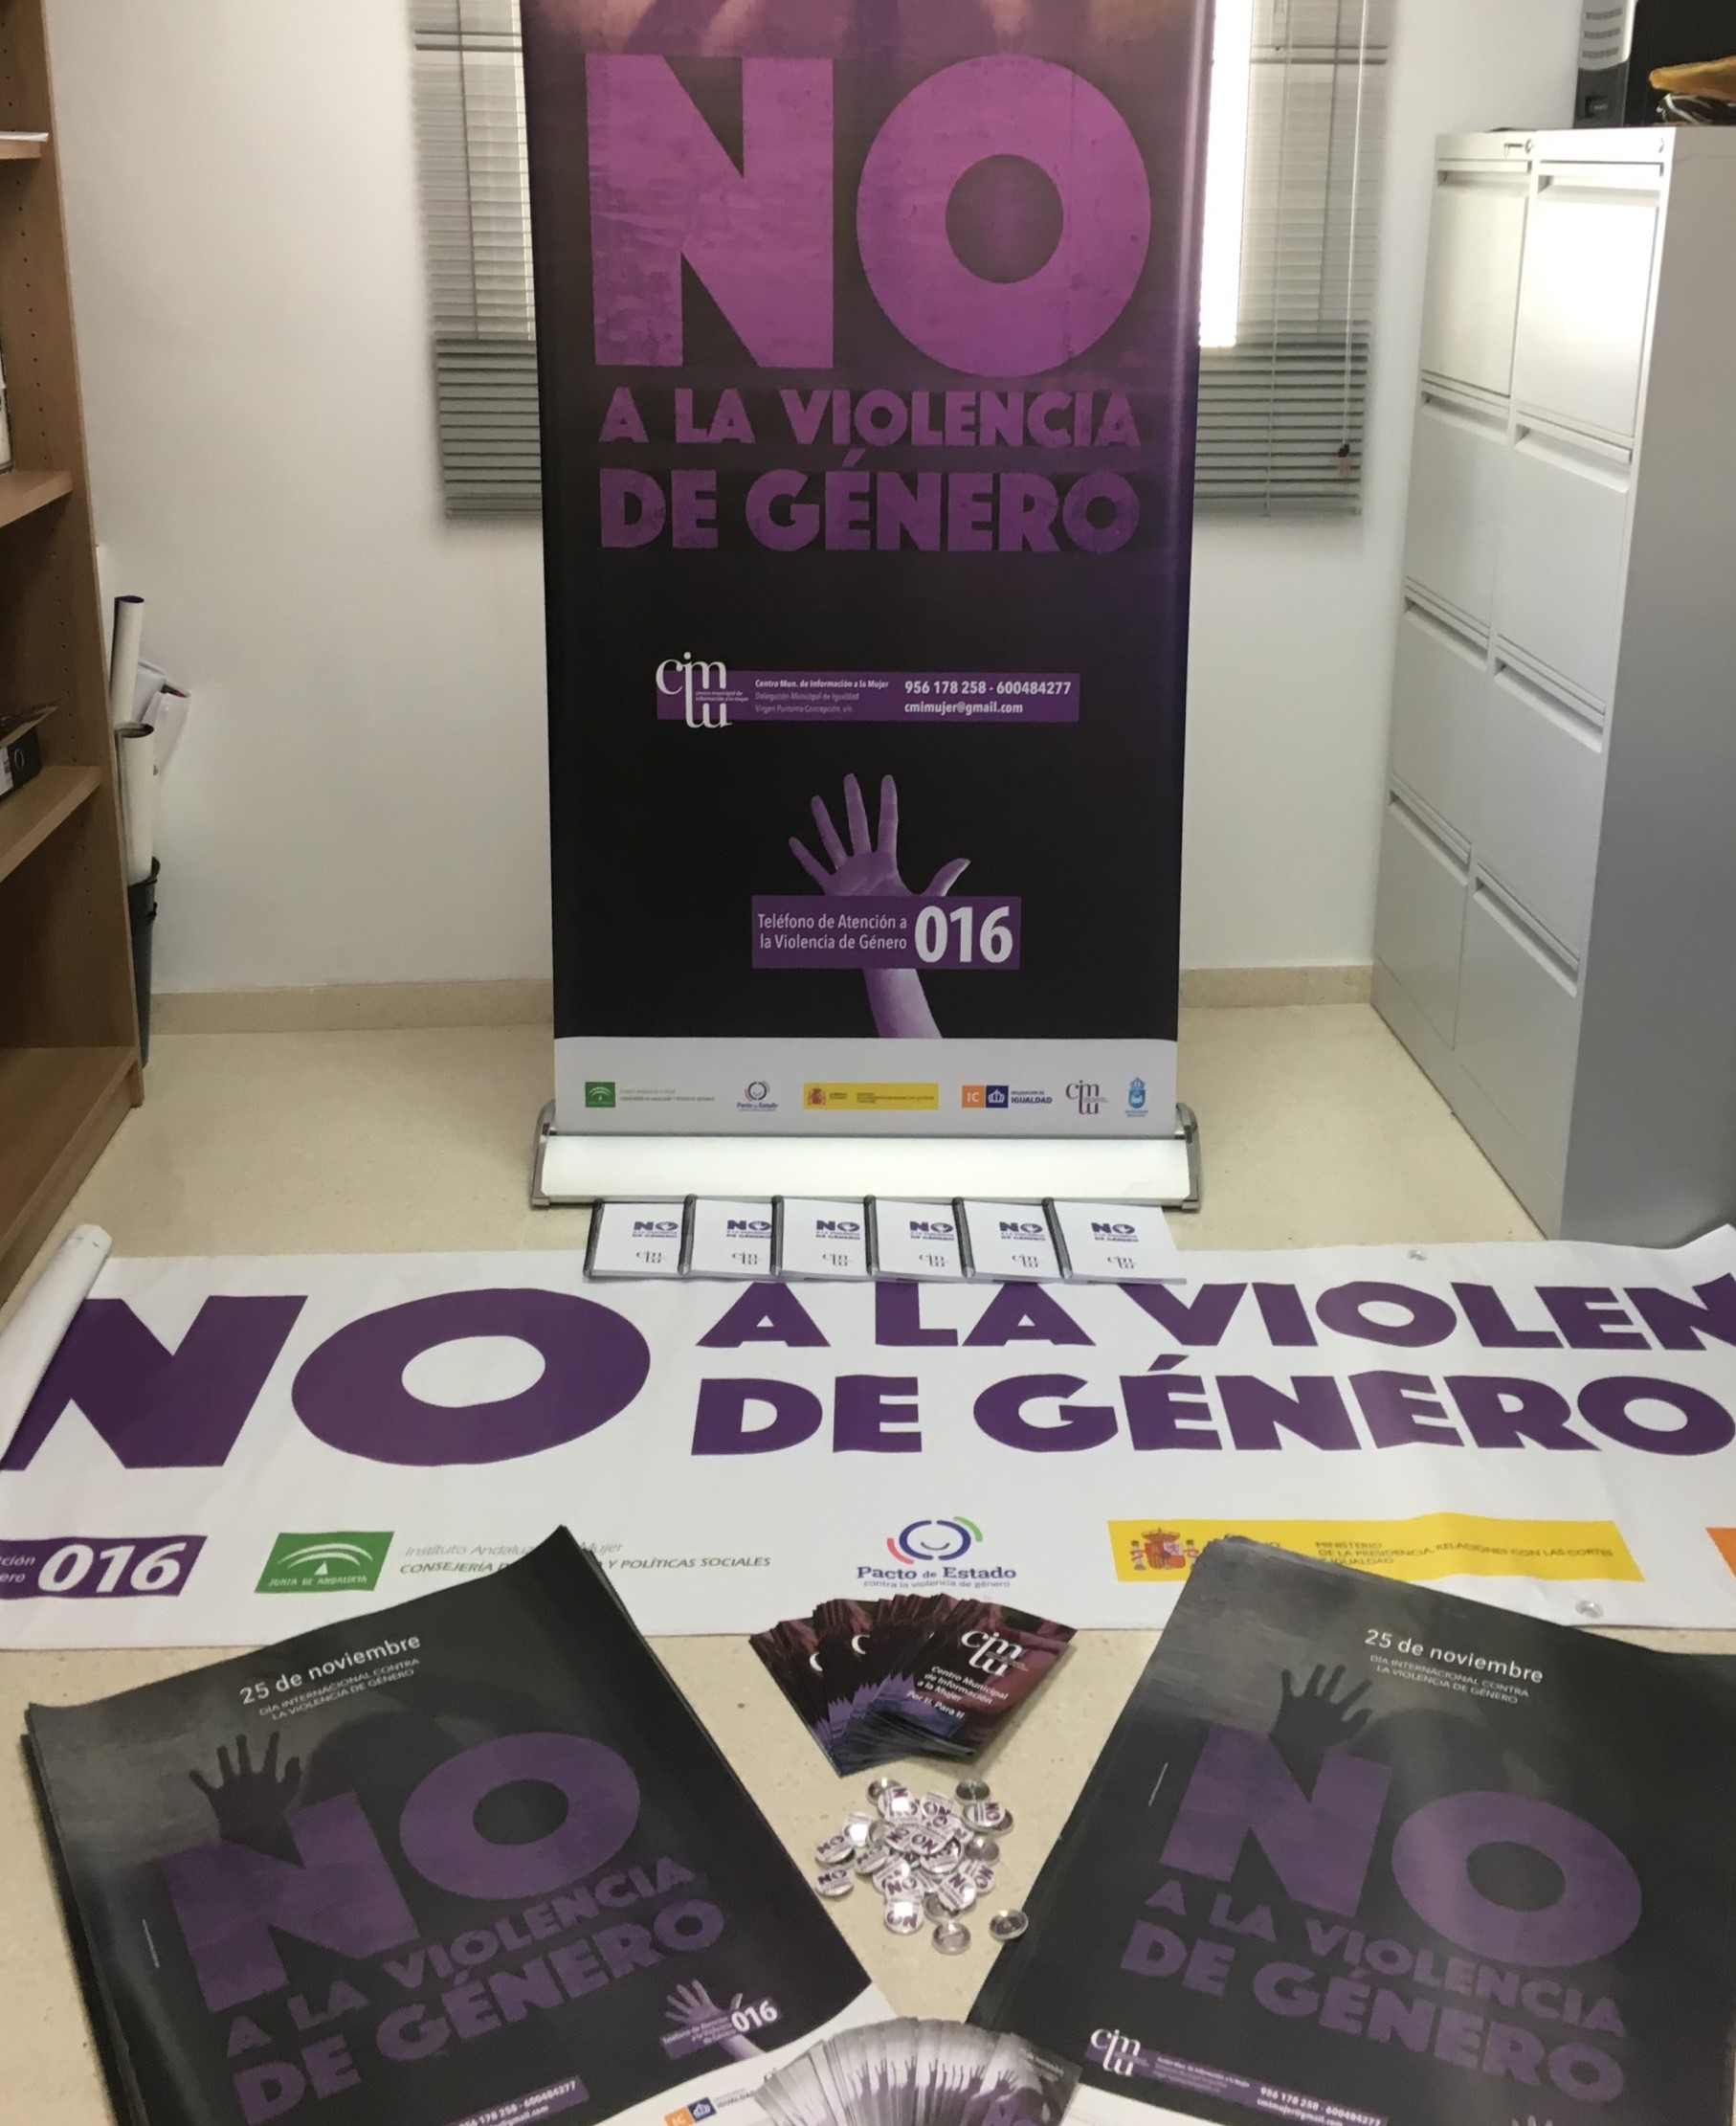 Campaña contra violencia genero